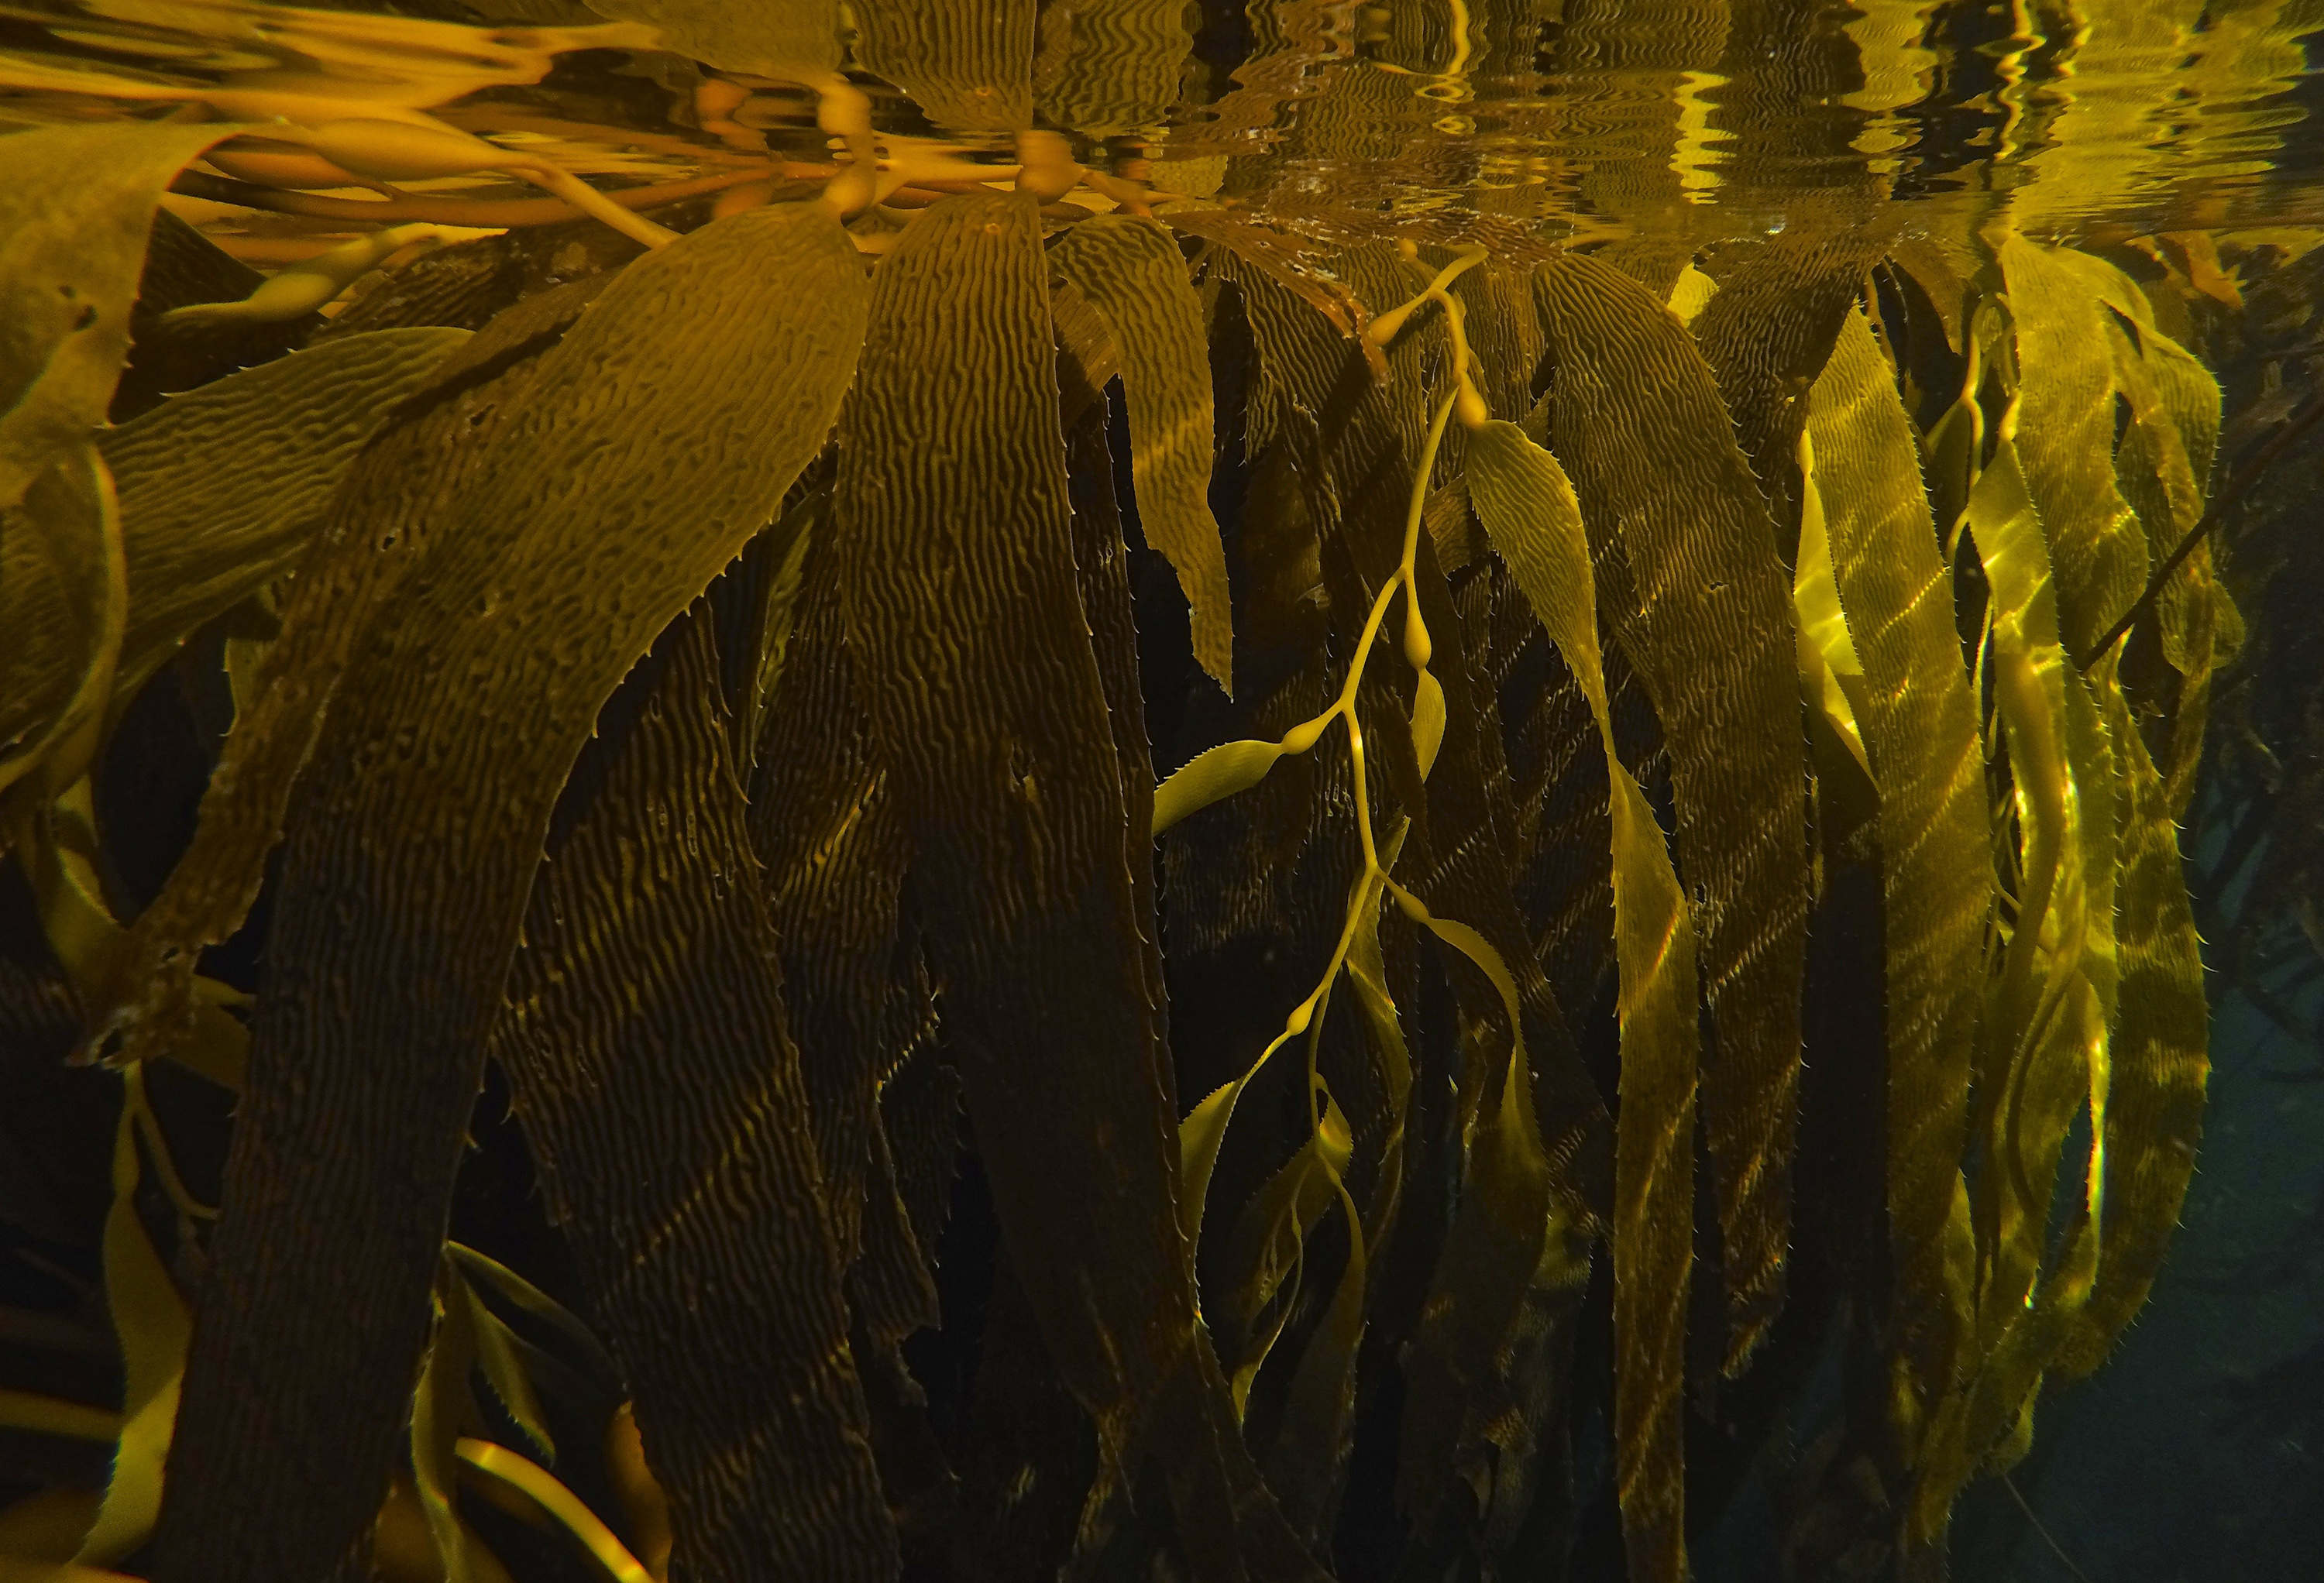 giant kelp underwater